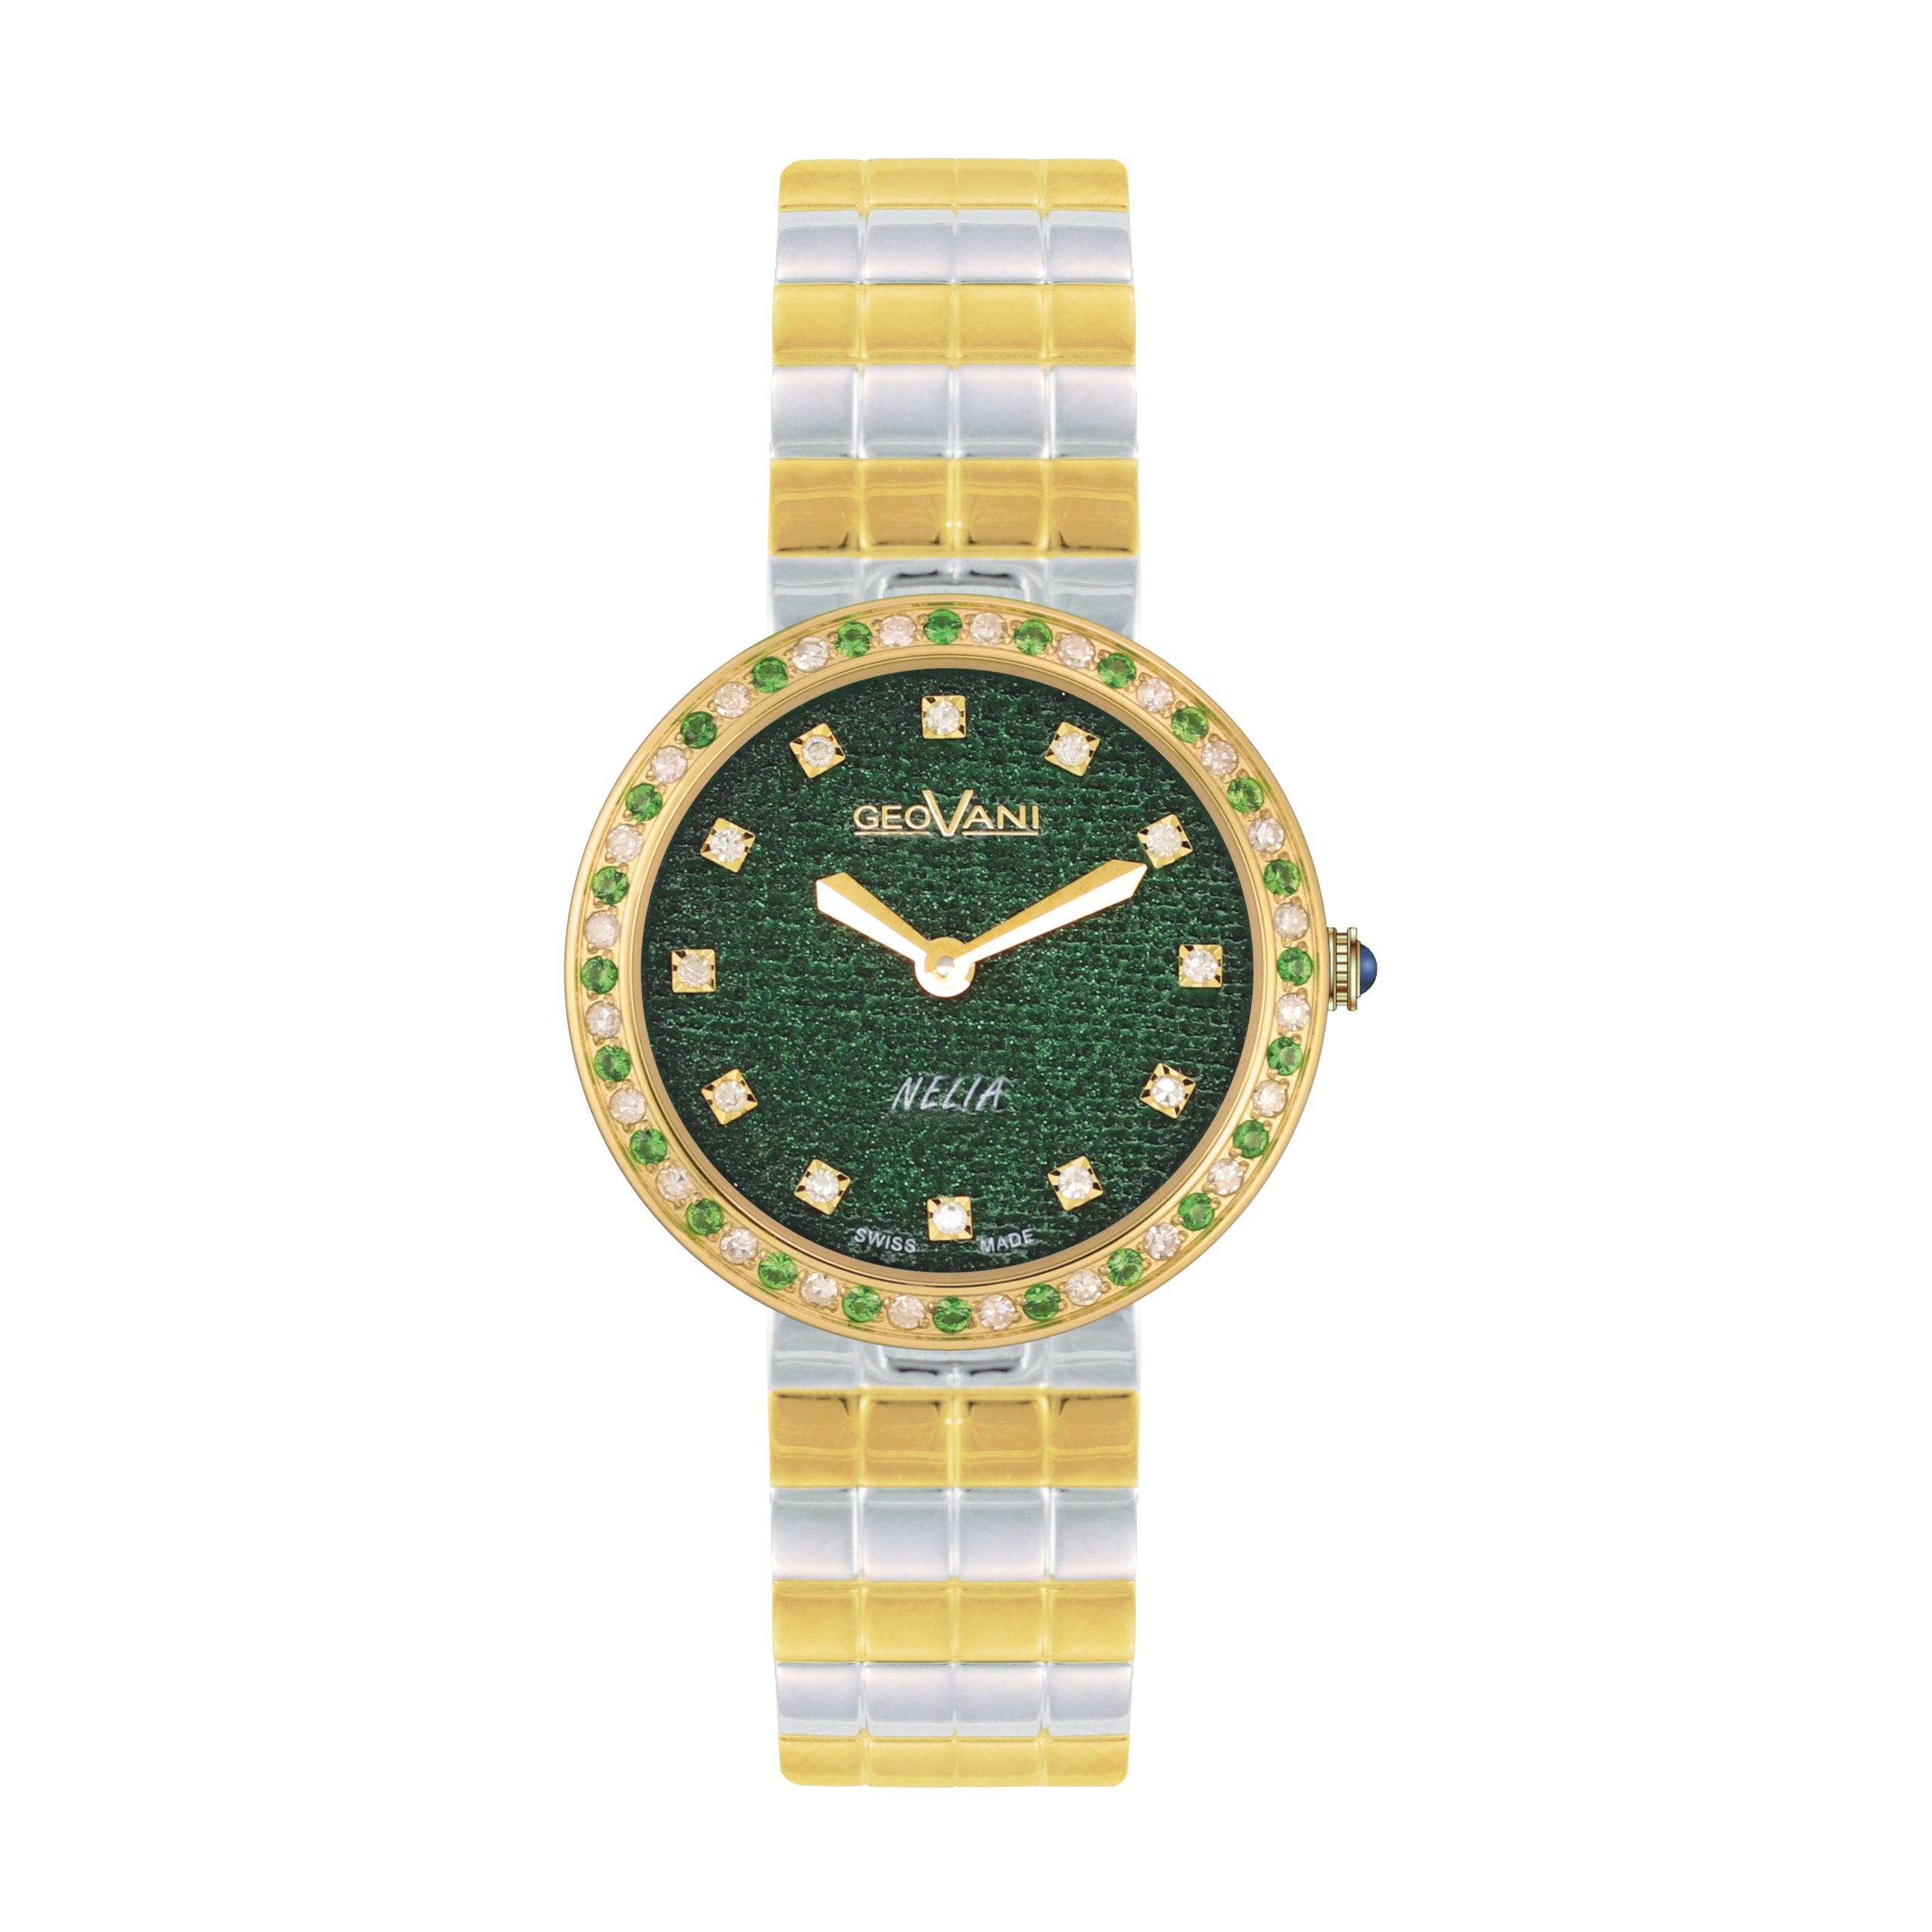 Giovanni Women's Swiss Quartz Watch with Green Dial - GEO-0022